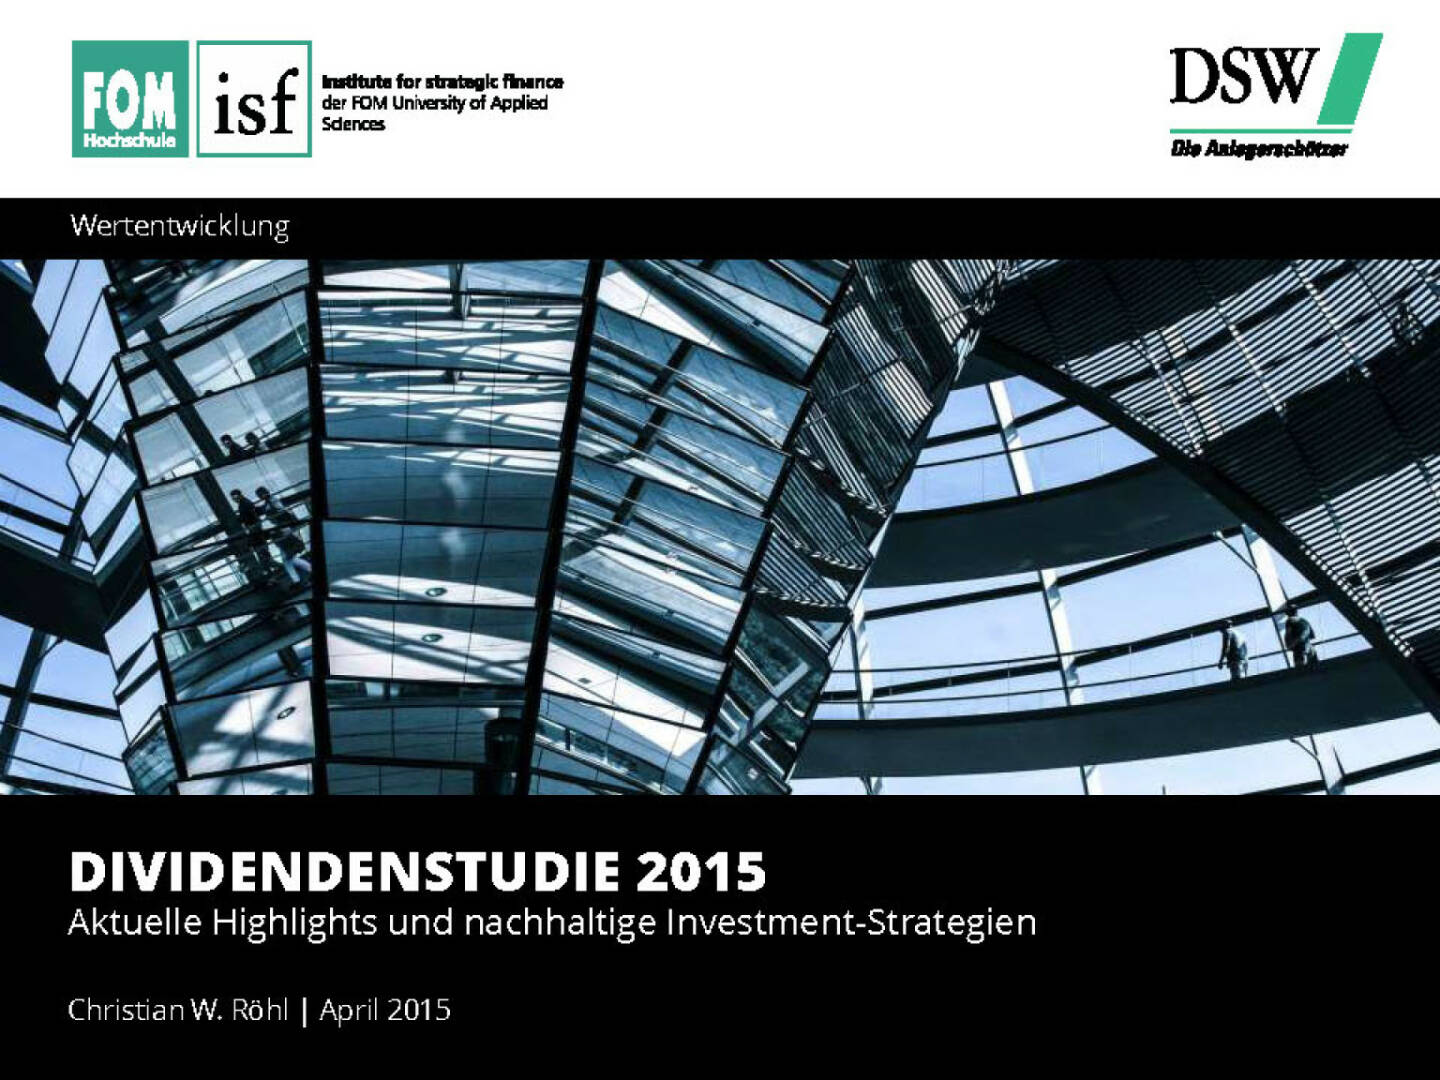 Dividendenstudie 2015 - Aktuelle Highlights und nachhaltige Investment-Strategien